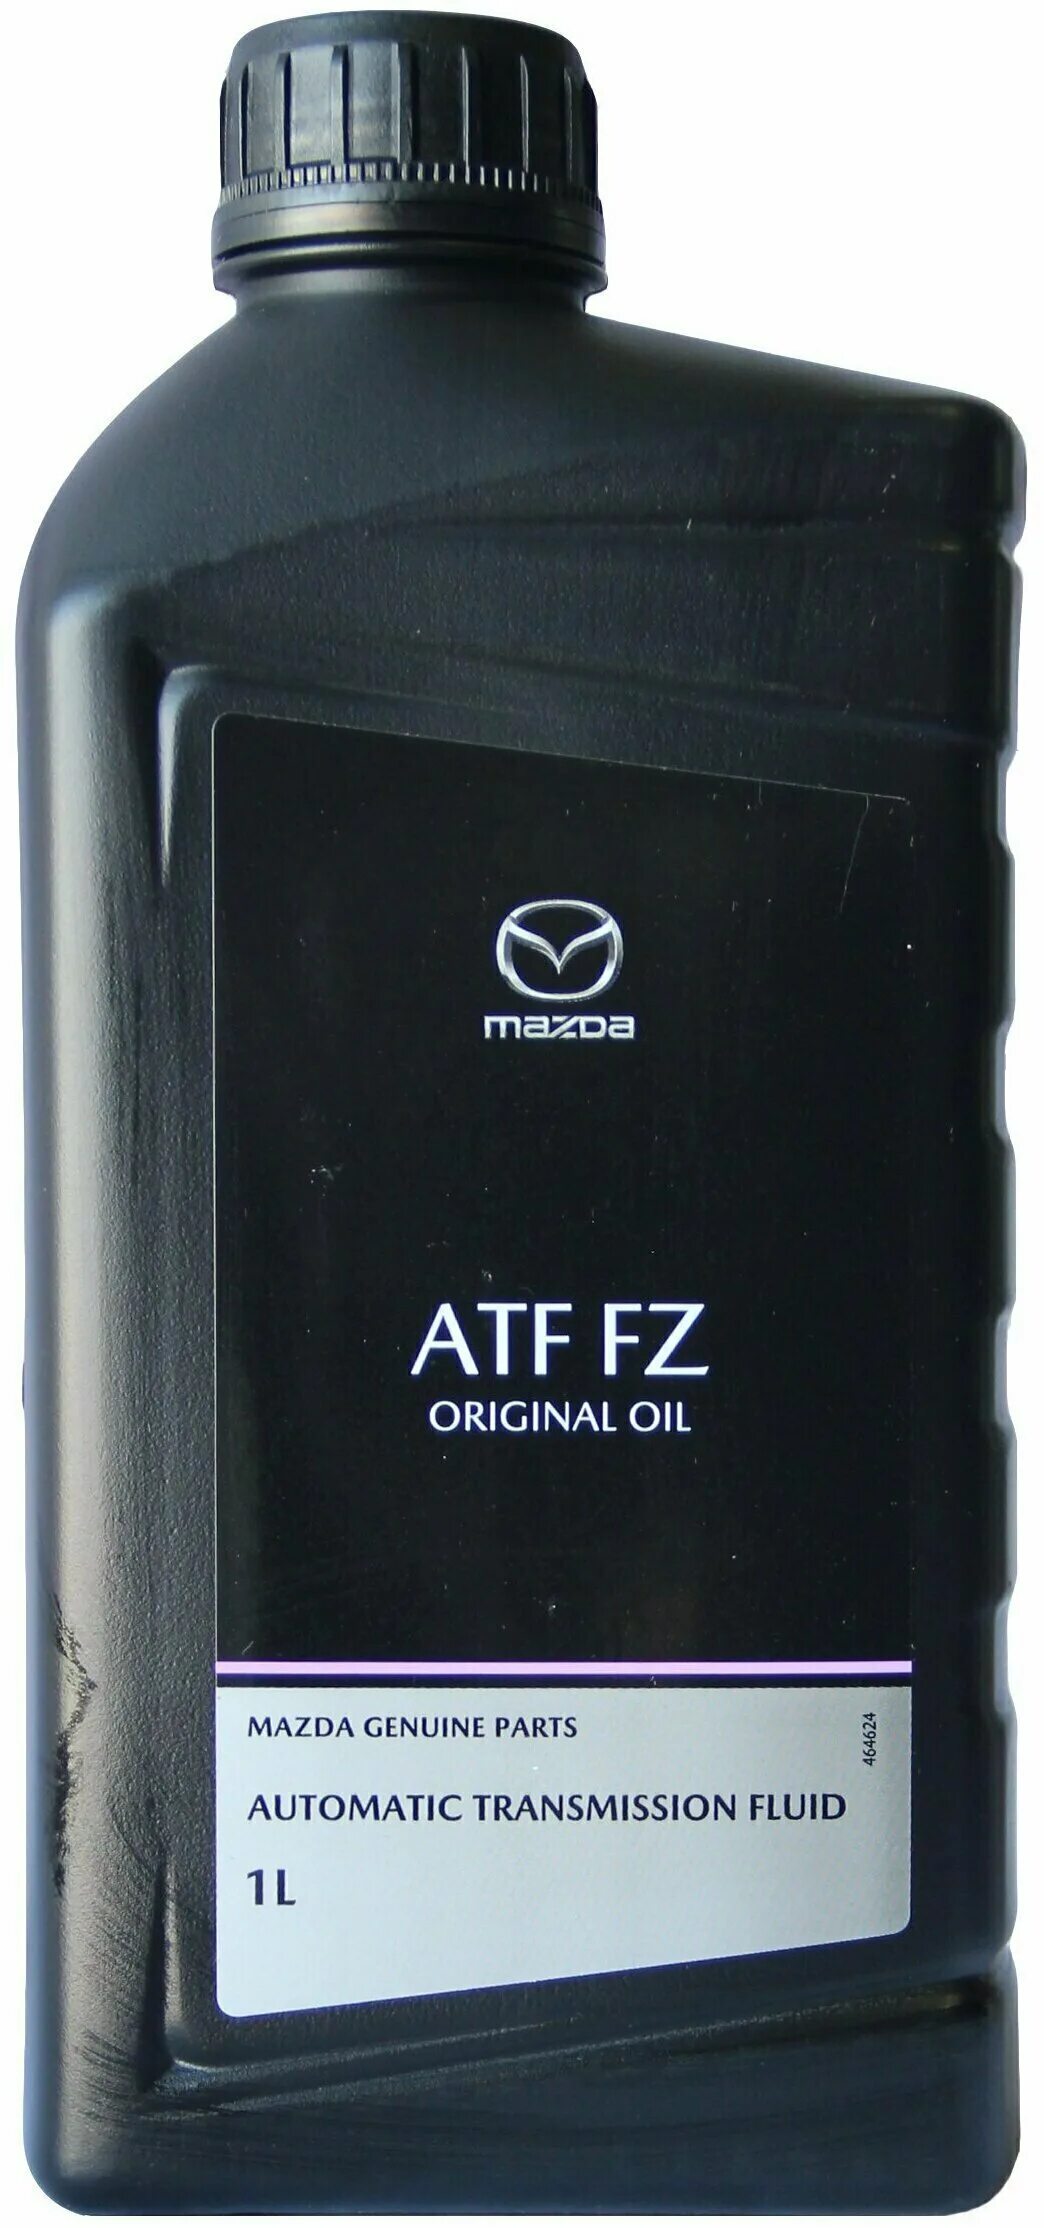 Atf fz купить. Mazda Original Oil ATF FZ. Mazda Original Oil ATF FZ 1л. ATF FZ Mazda цвет масла. Mazda 8300771773.